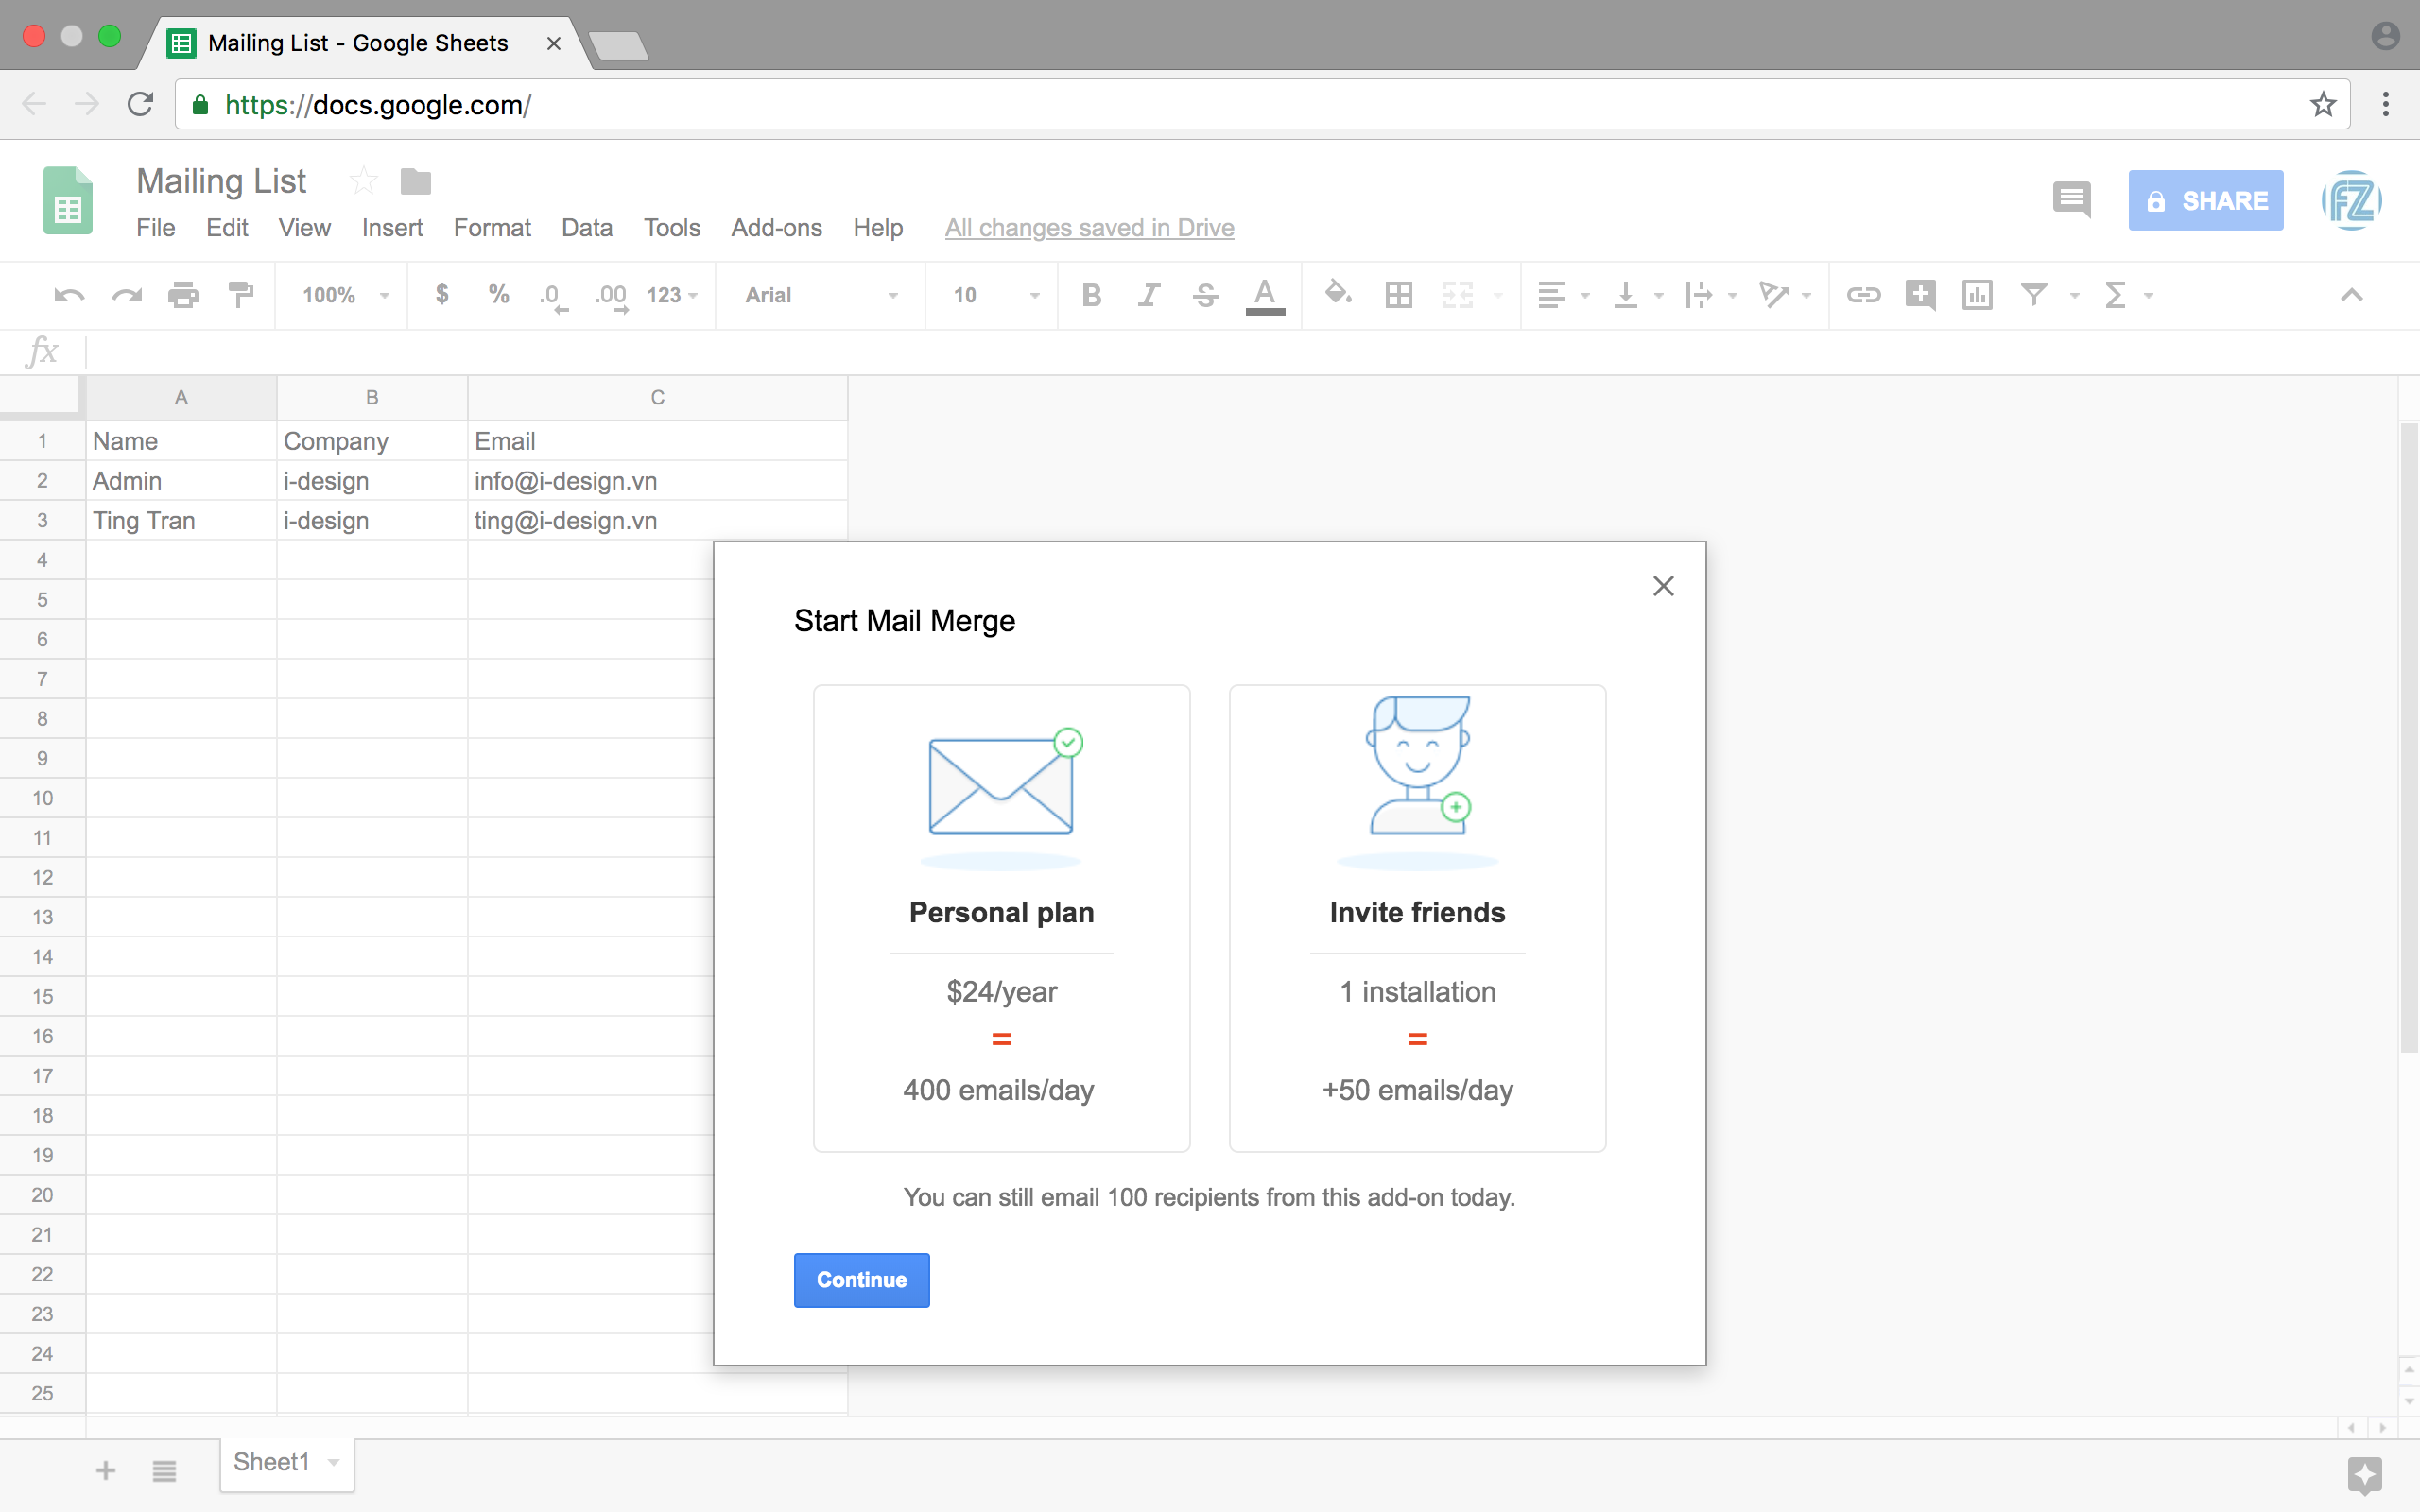 Mailing - Start Mail merge